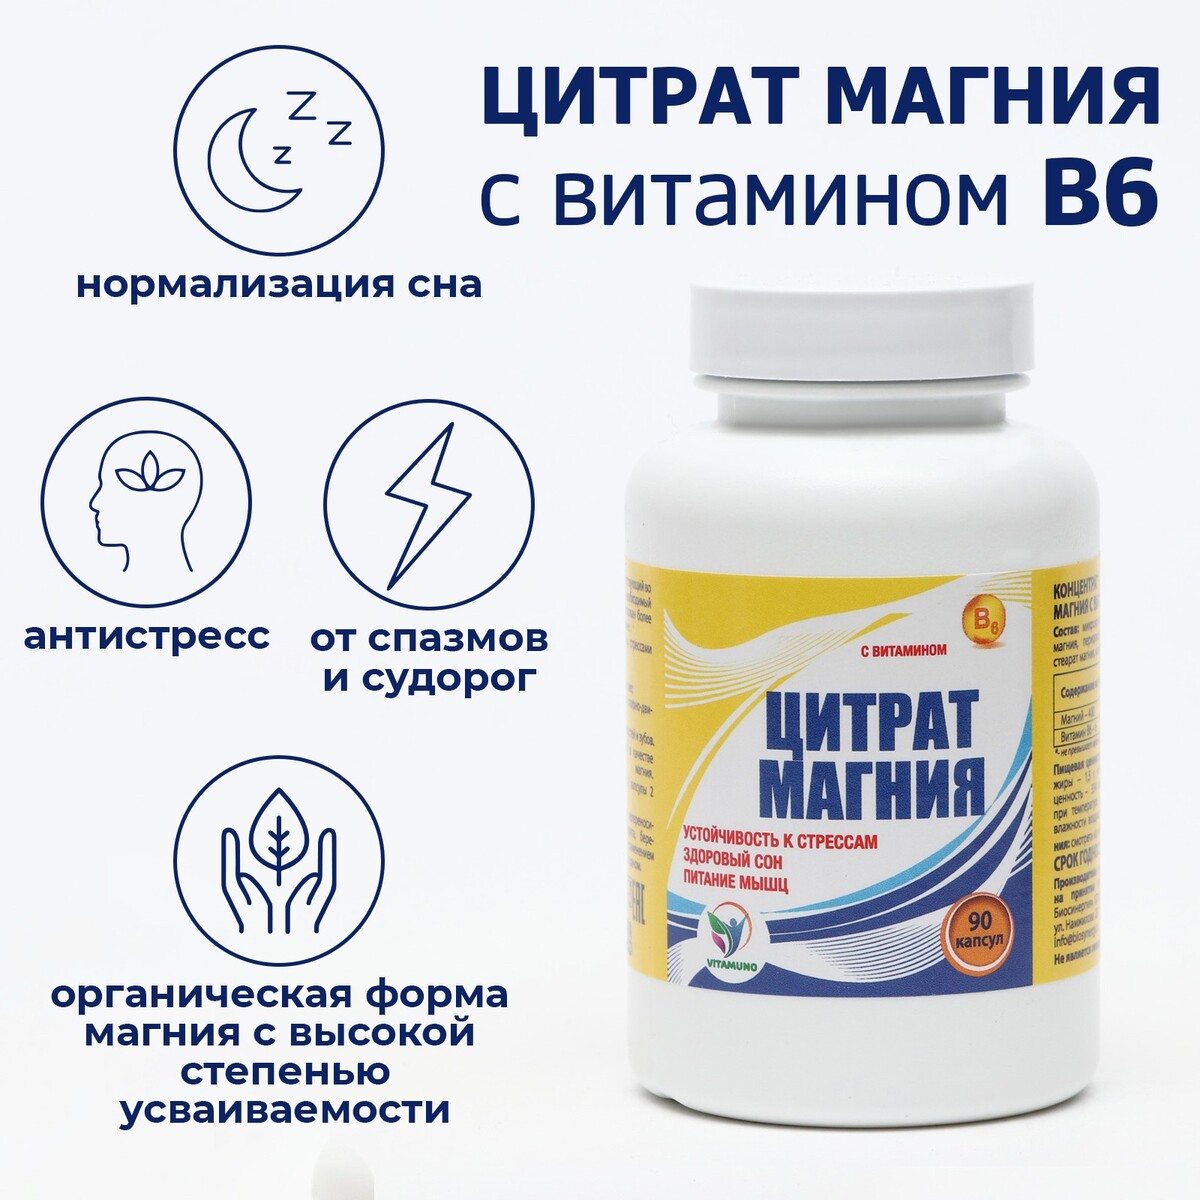 Цитрат магния с витамином в6 vitamuno, для борьбы со стрессом и усталостью, 90 капсул Vitamuno